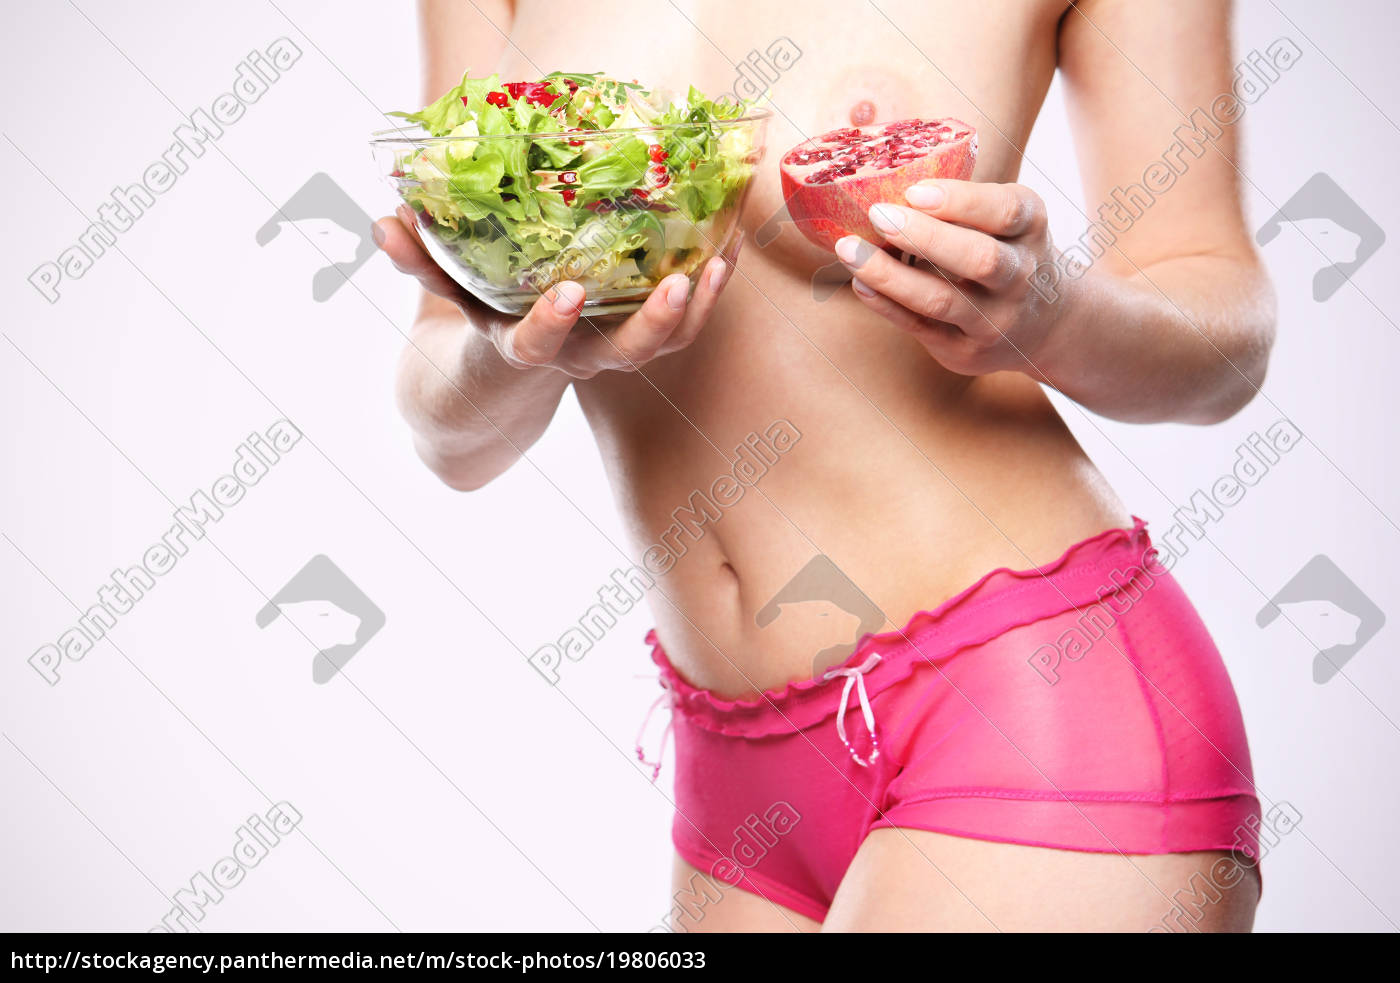 какие продукты способствуют росту груди у женщин фото 6